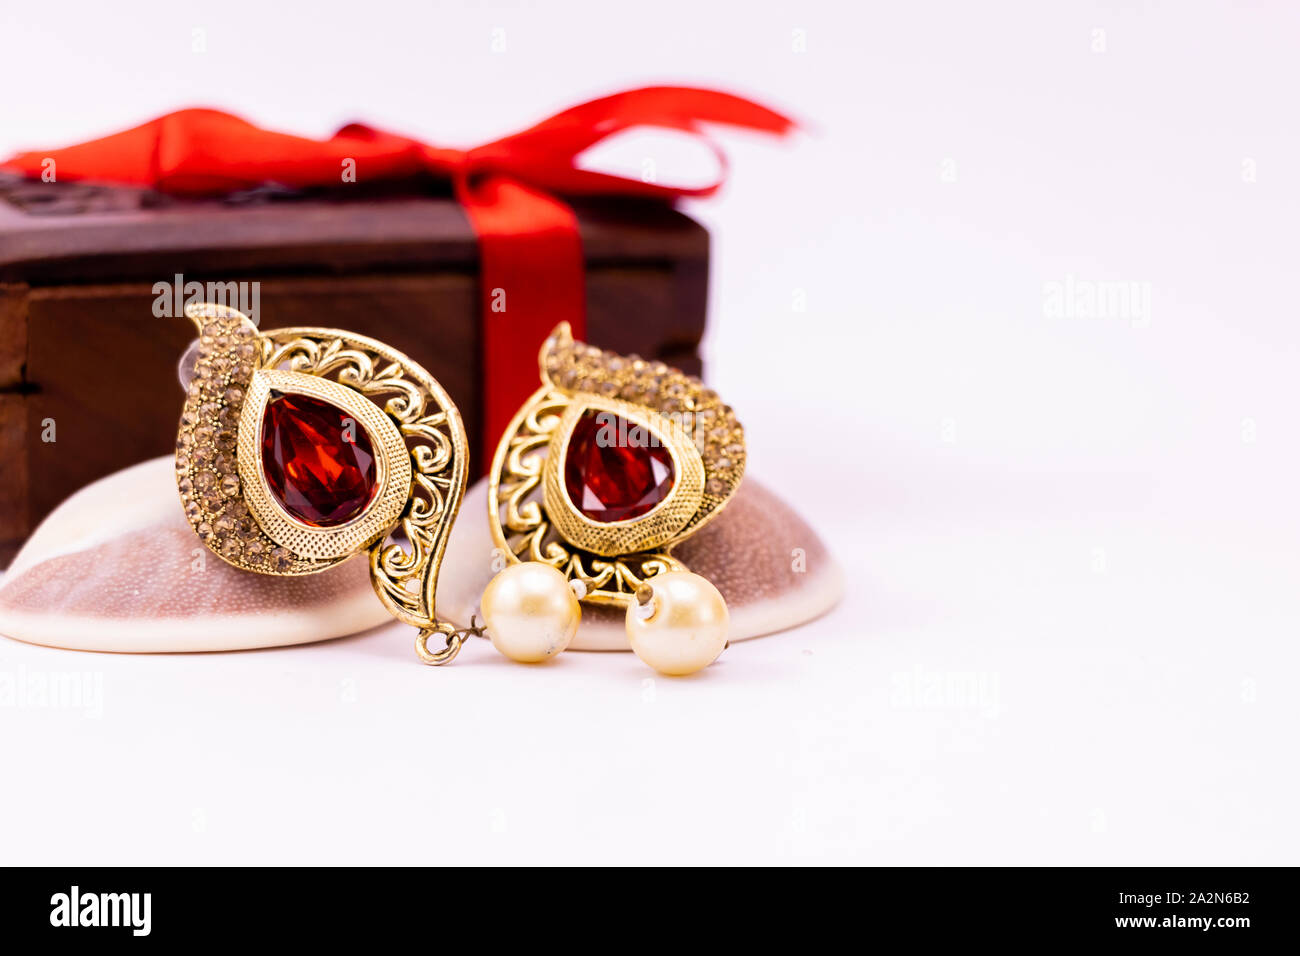 Golden earring de conchas y caja de regalo de madera decorada con una cinta roja sobre fondo blanco. Concepto de regalo de aniversario Foto de stock